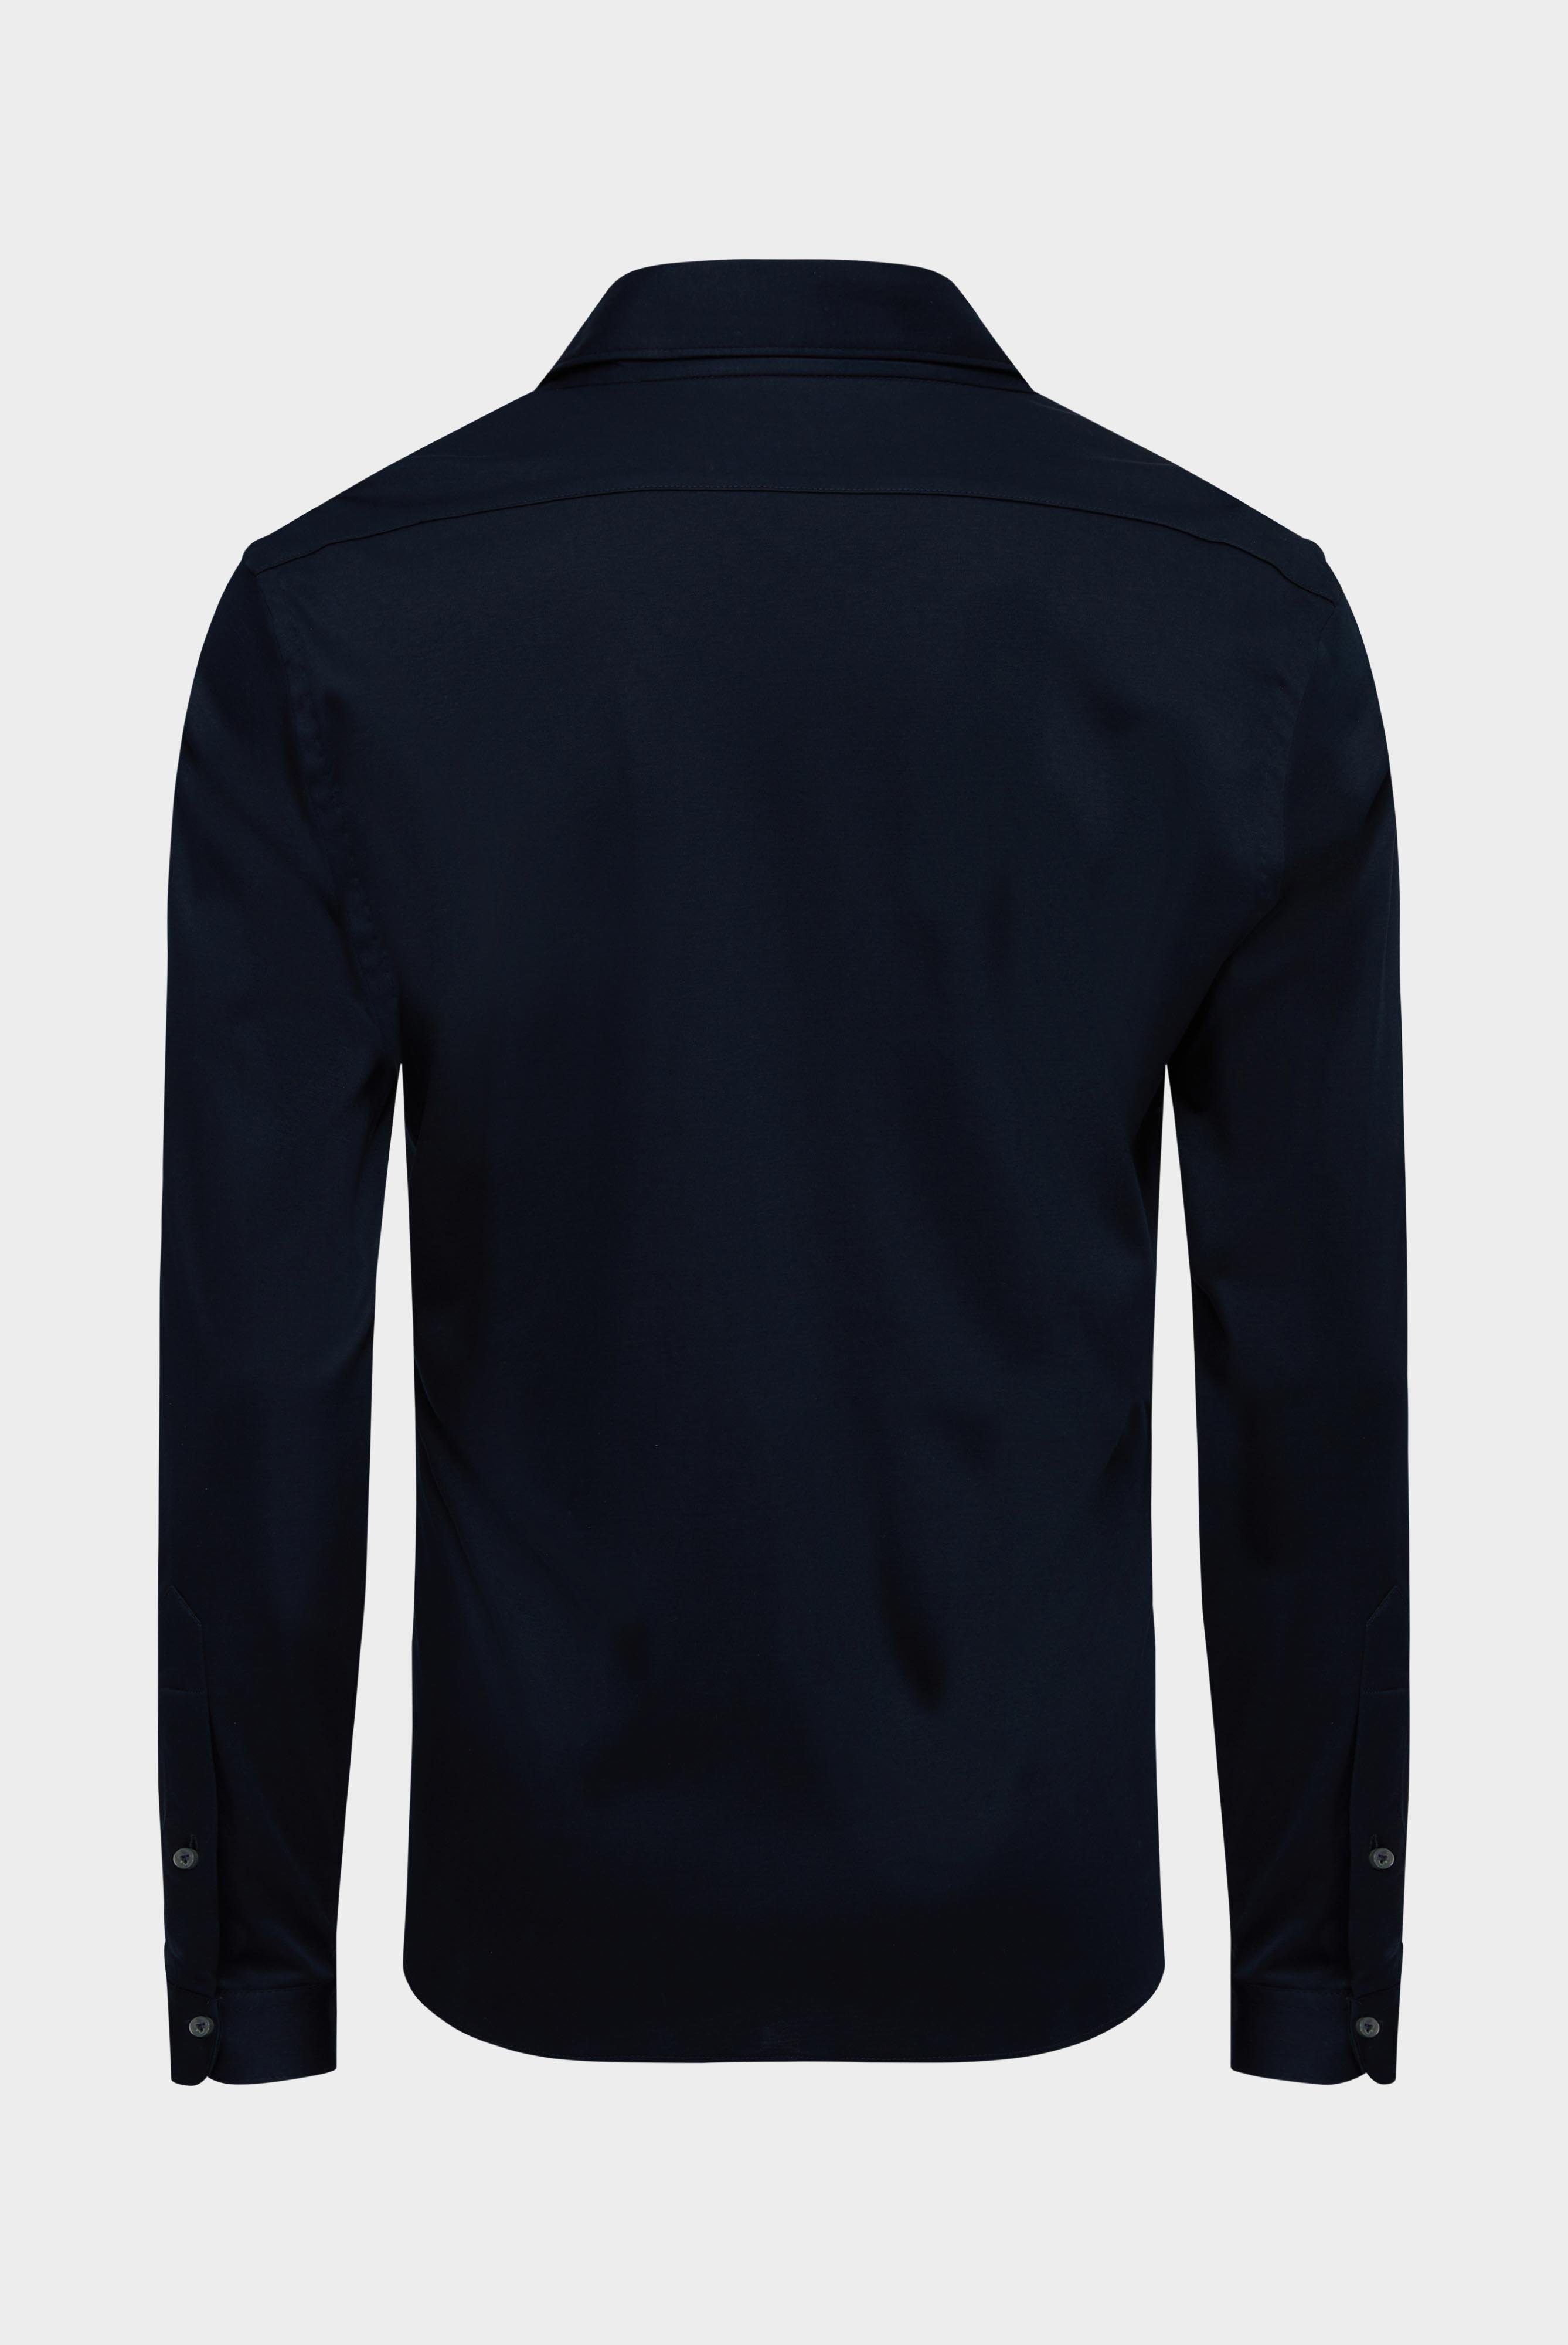 Bügelleichte Hemden+Jersey Hemd mit glänzender Optik Tailor Fit+20.1683.UC.180031.790.XXL